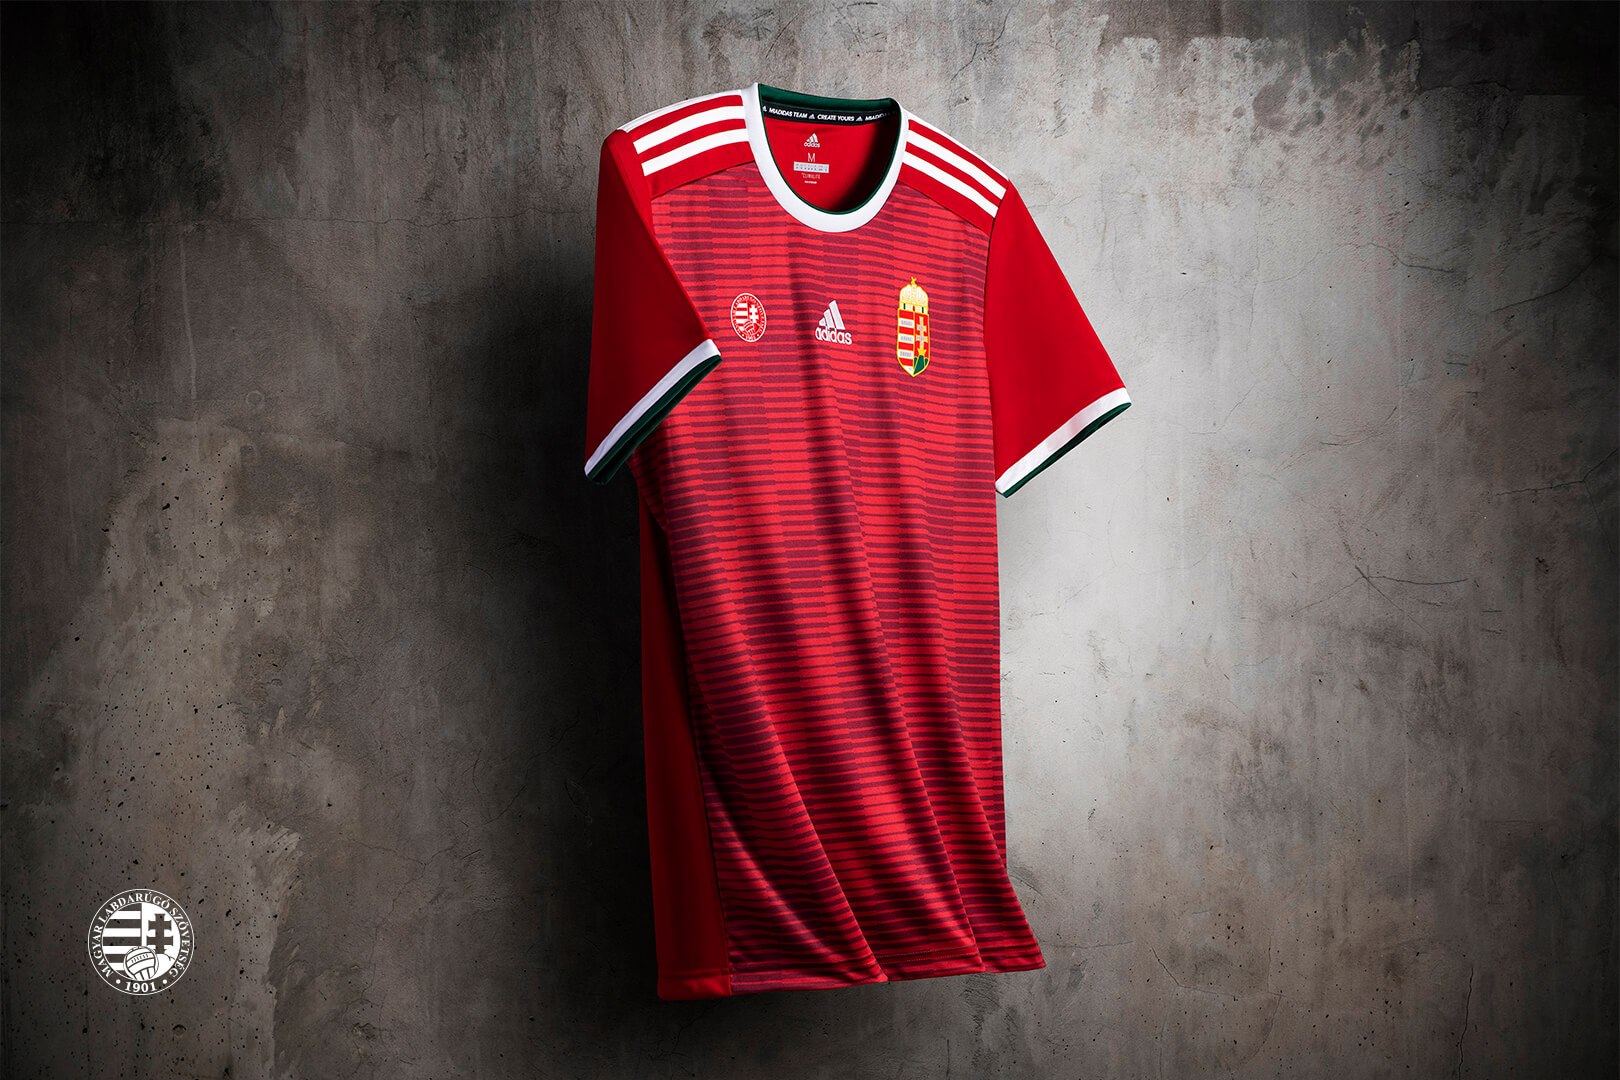 Hungary 2018-19 Adidas Home Kit | 18/19 Kits | Football shirt blog